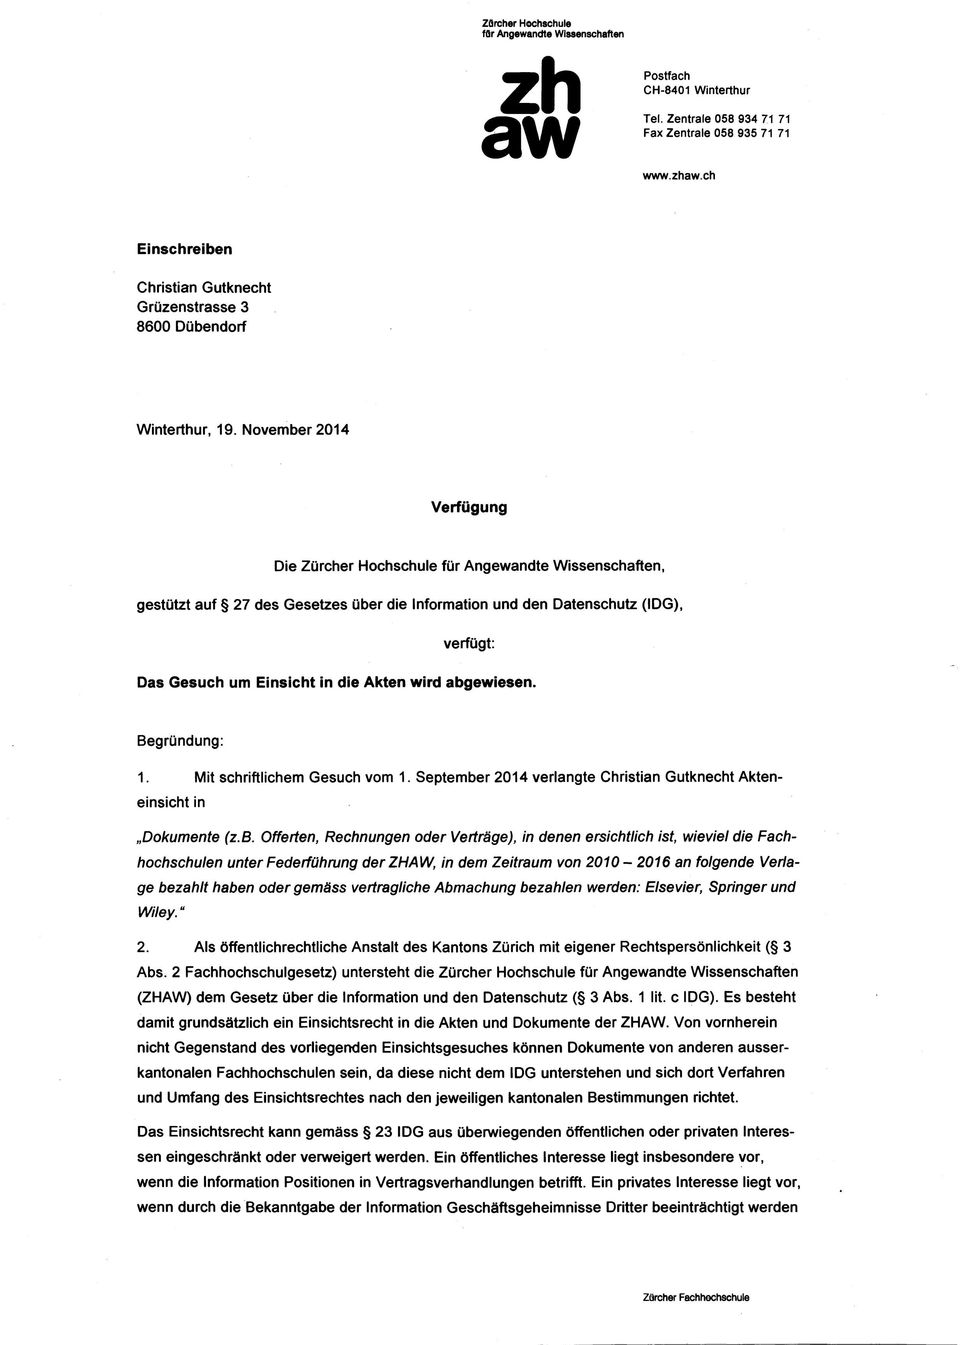 November 2014 Verfügung Die Zürcher Hochschule für Angewandte Wissenschaften, gestützt auf 27 des Gesetzes über die Information und den Datenschutz (IDG), verfügt: Das Gesuch um Einsicht in die Akten